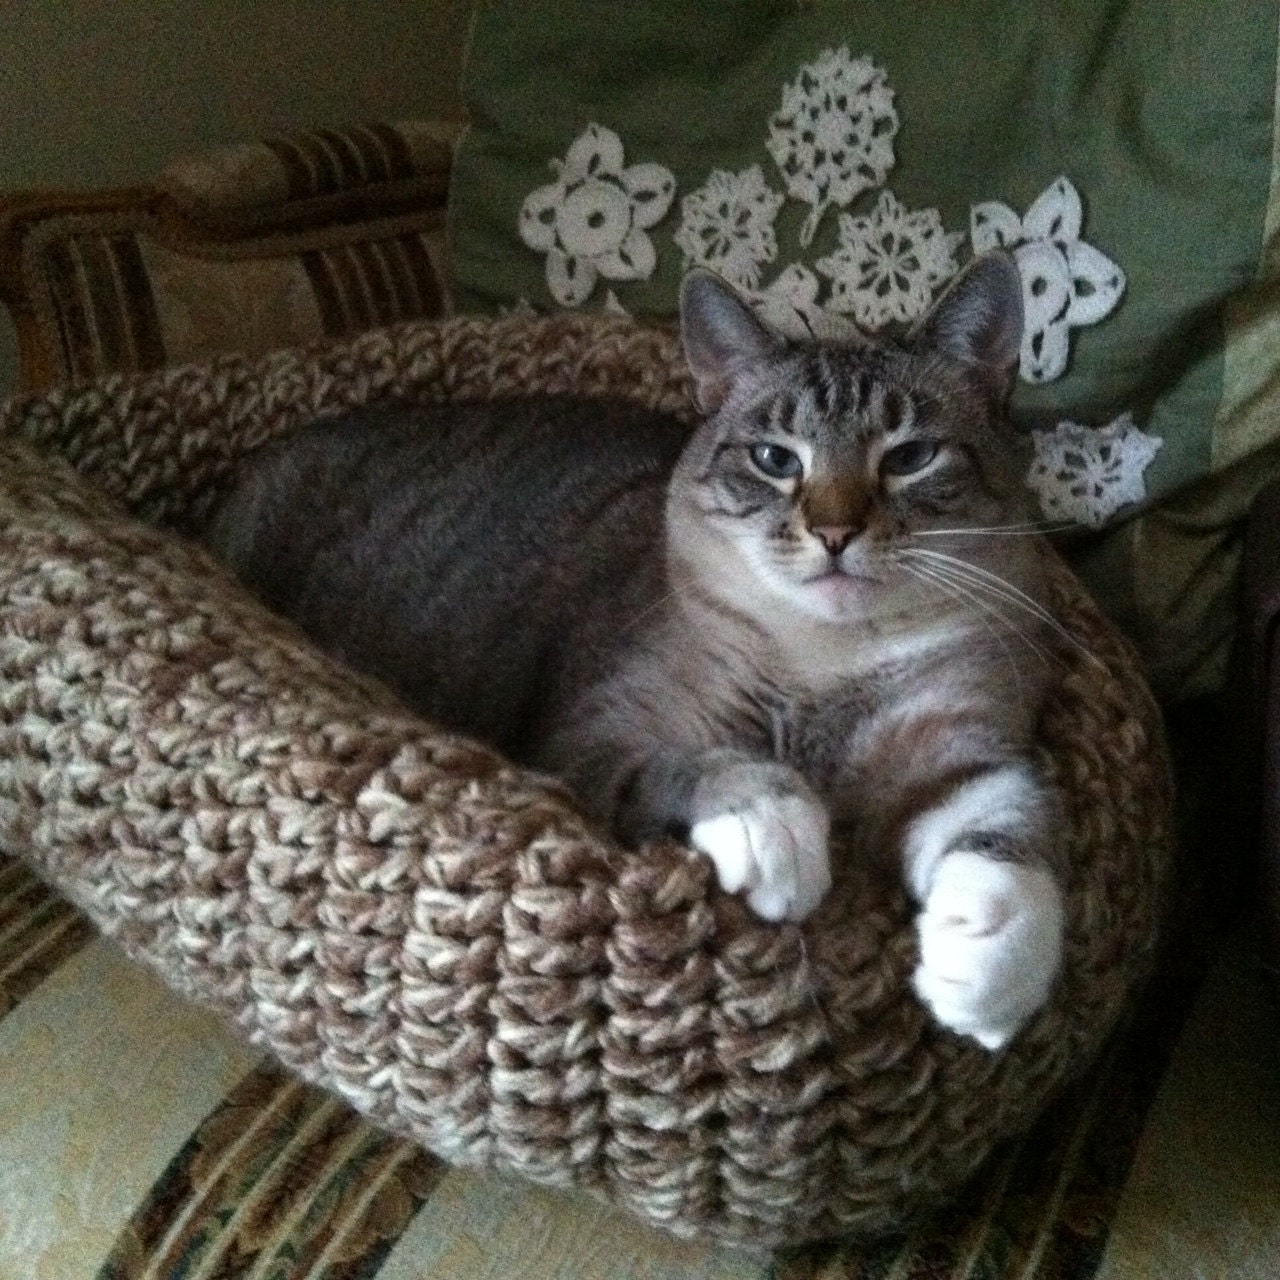 Crochet Pet Bed for Cat or Small Dog Neutral Gray White Green Handmade Littlestsister - LittlestSister